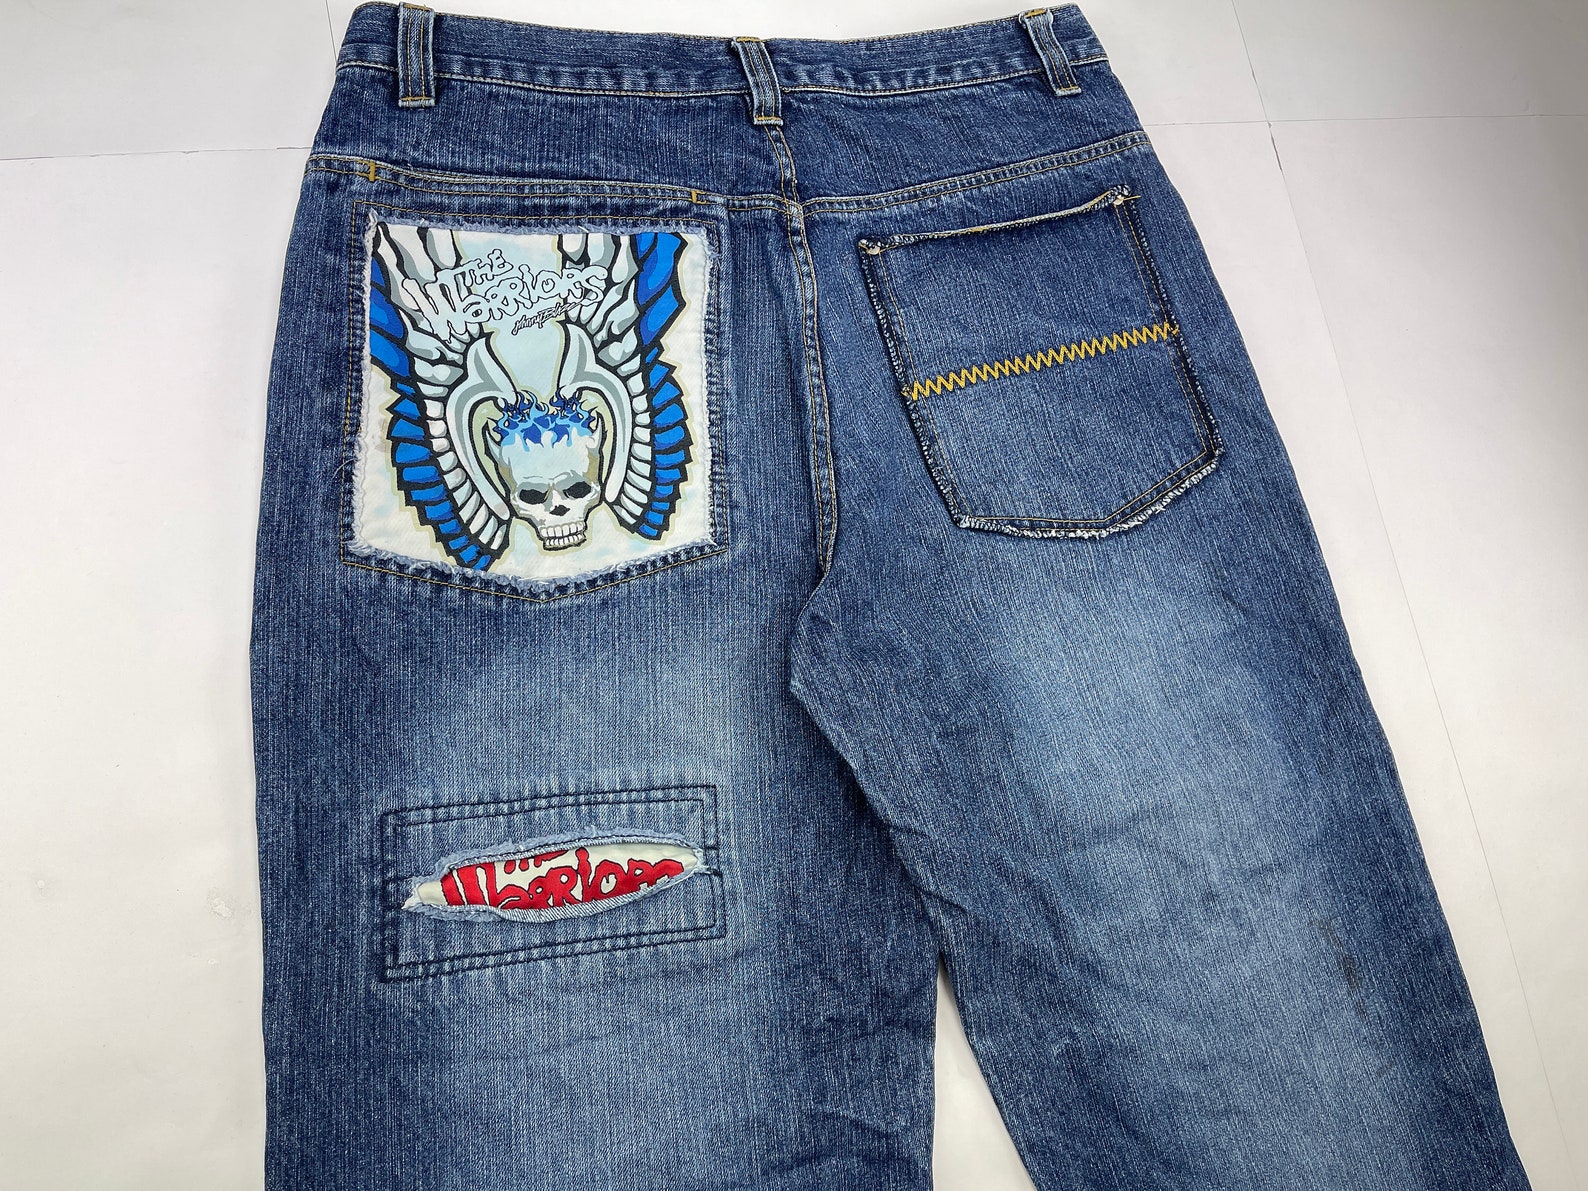 Johnny Blaze Jeans Old School Wu Wear Pants Vintage Baggy - Etsy